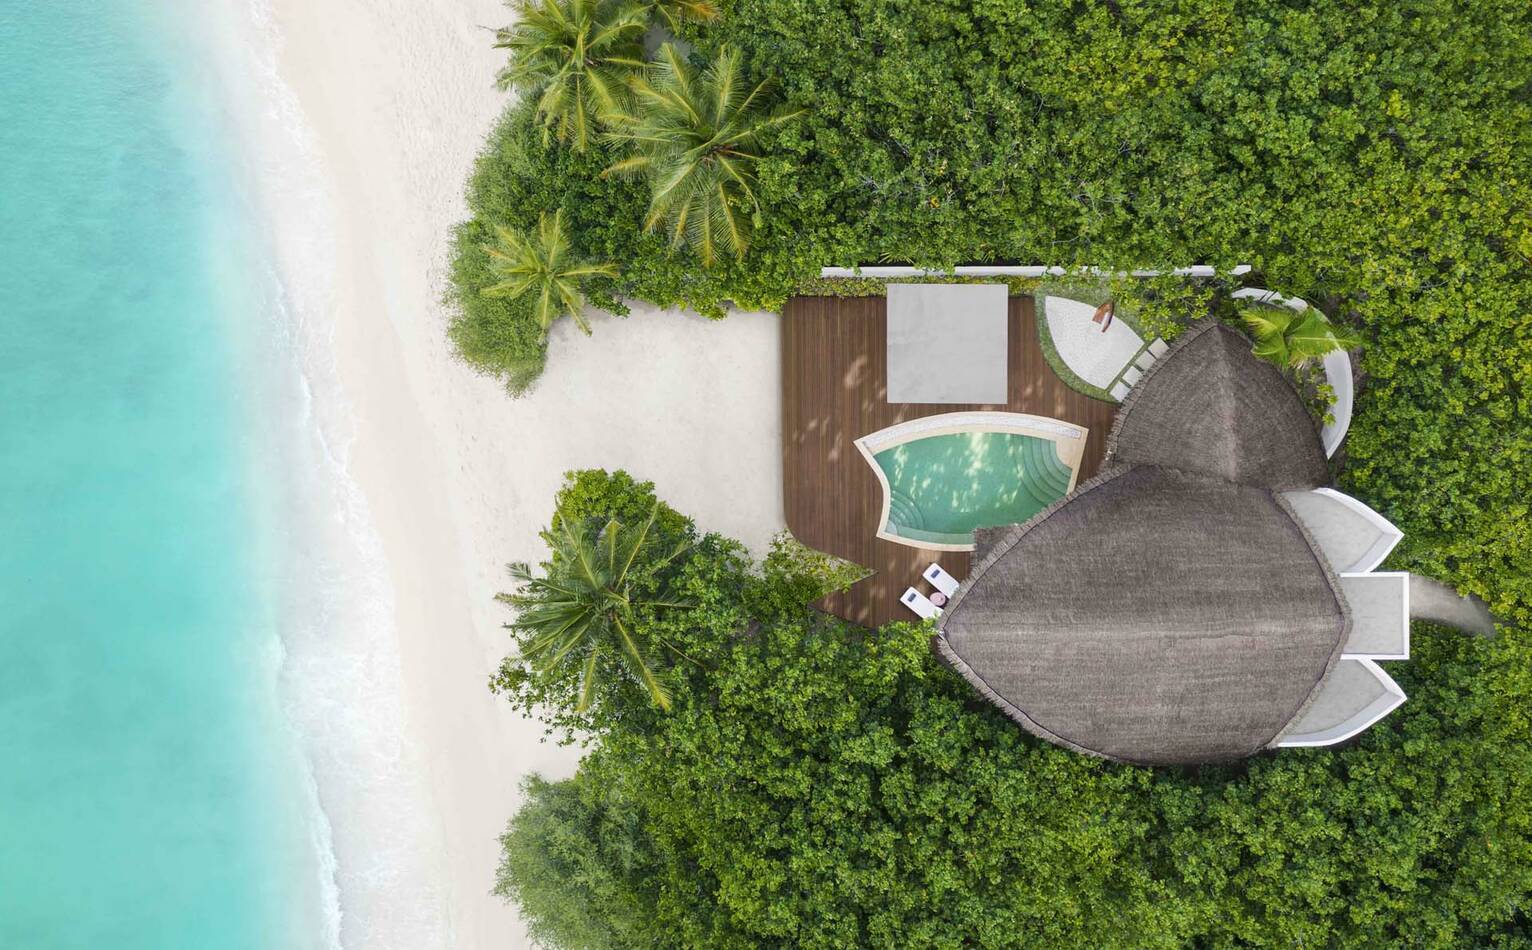 JW Marriott Maldives beach pool villa